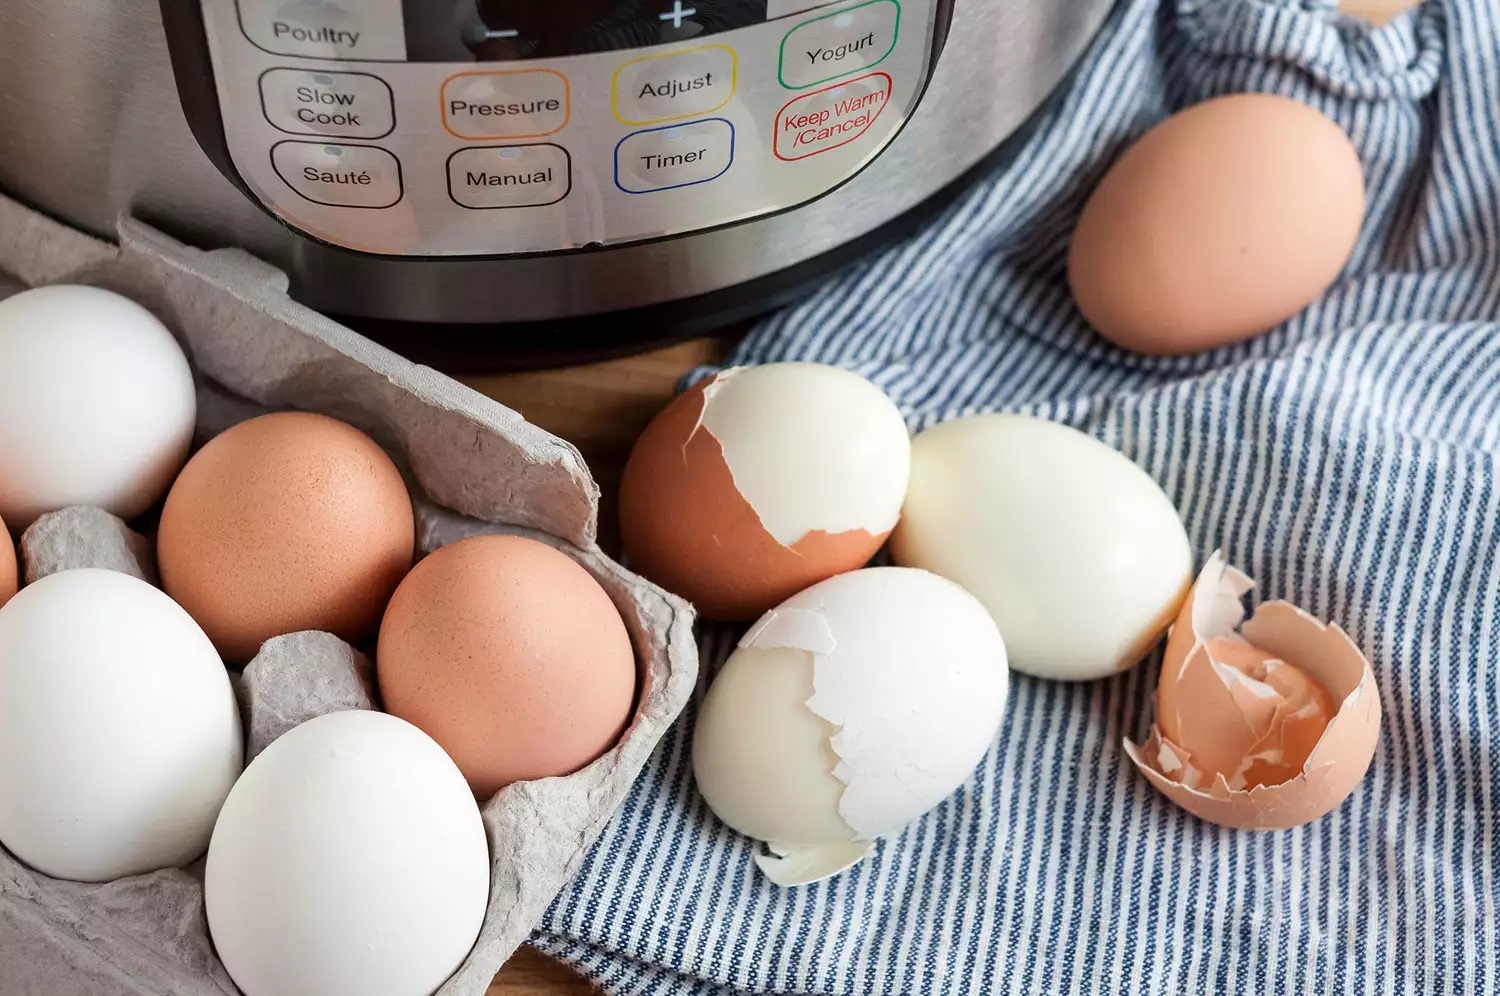 Procurando ovos cozidos que são fáceis de descascar? Confira nossas dicas.